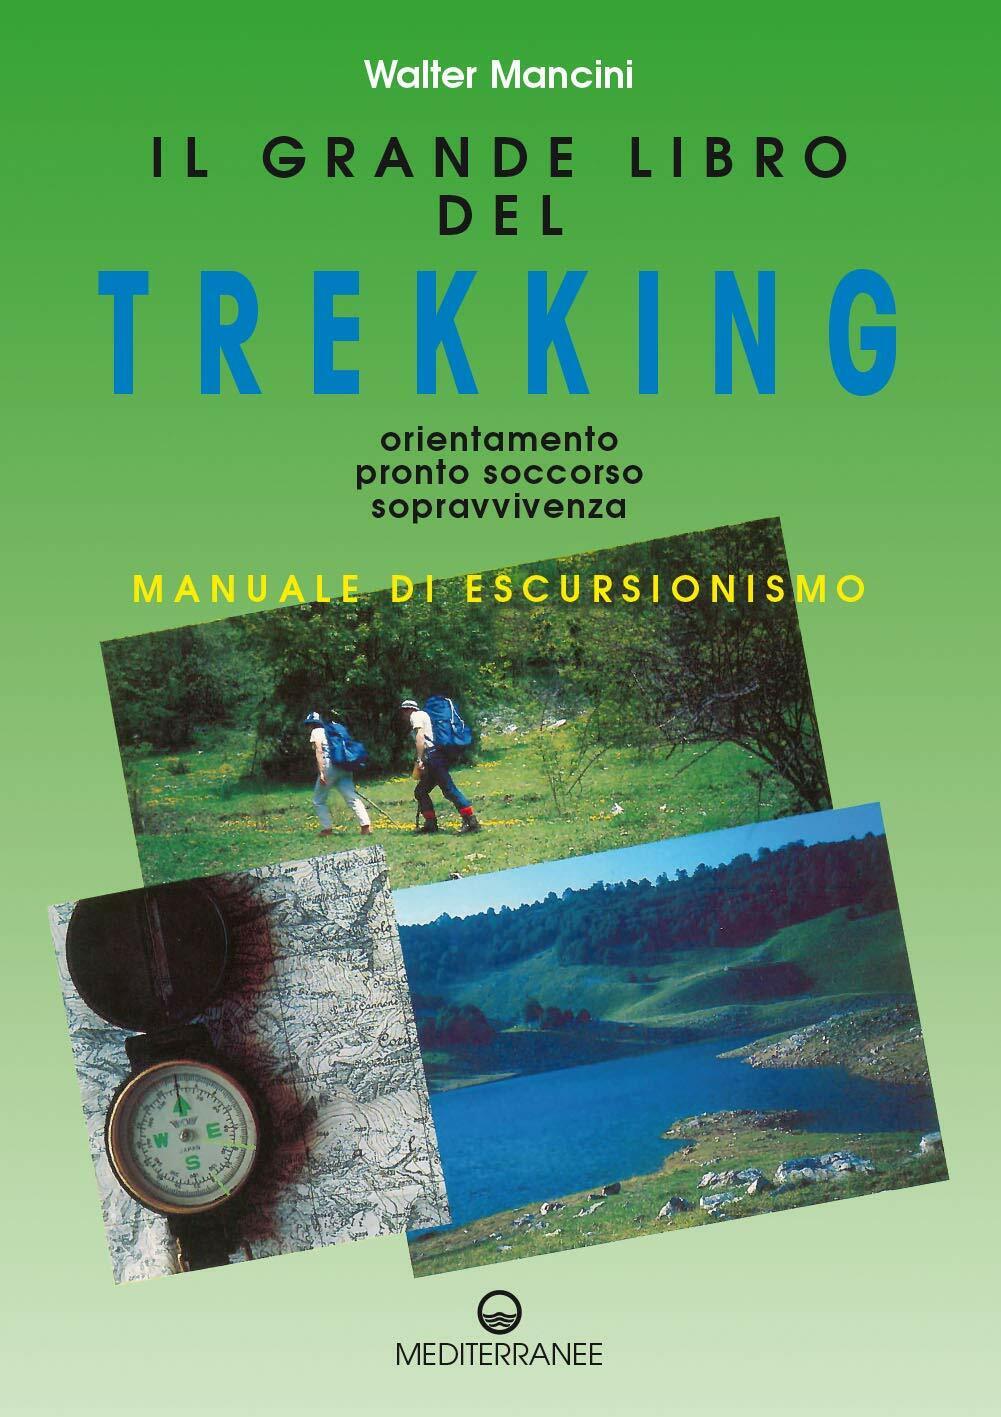 Il grande libro del trekking - Walter Mancini - Edizioni Mediterranee, 1994 libro usato